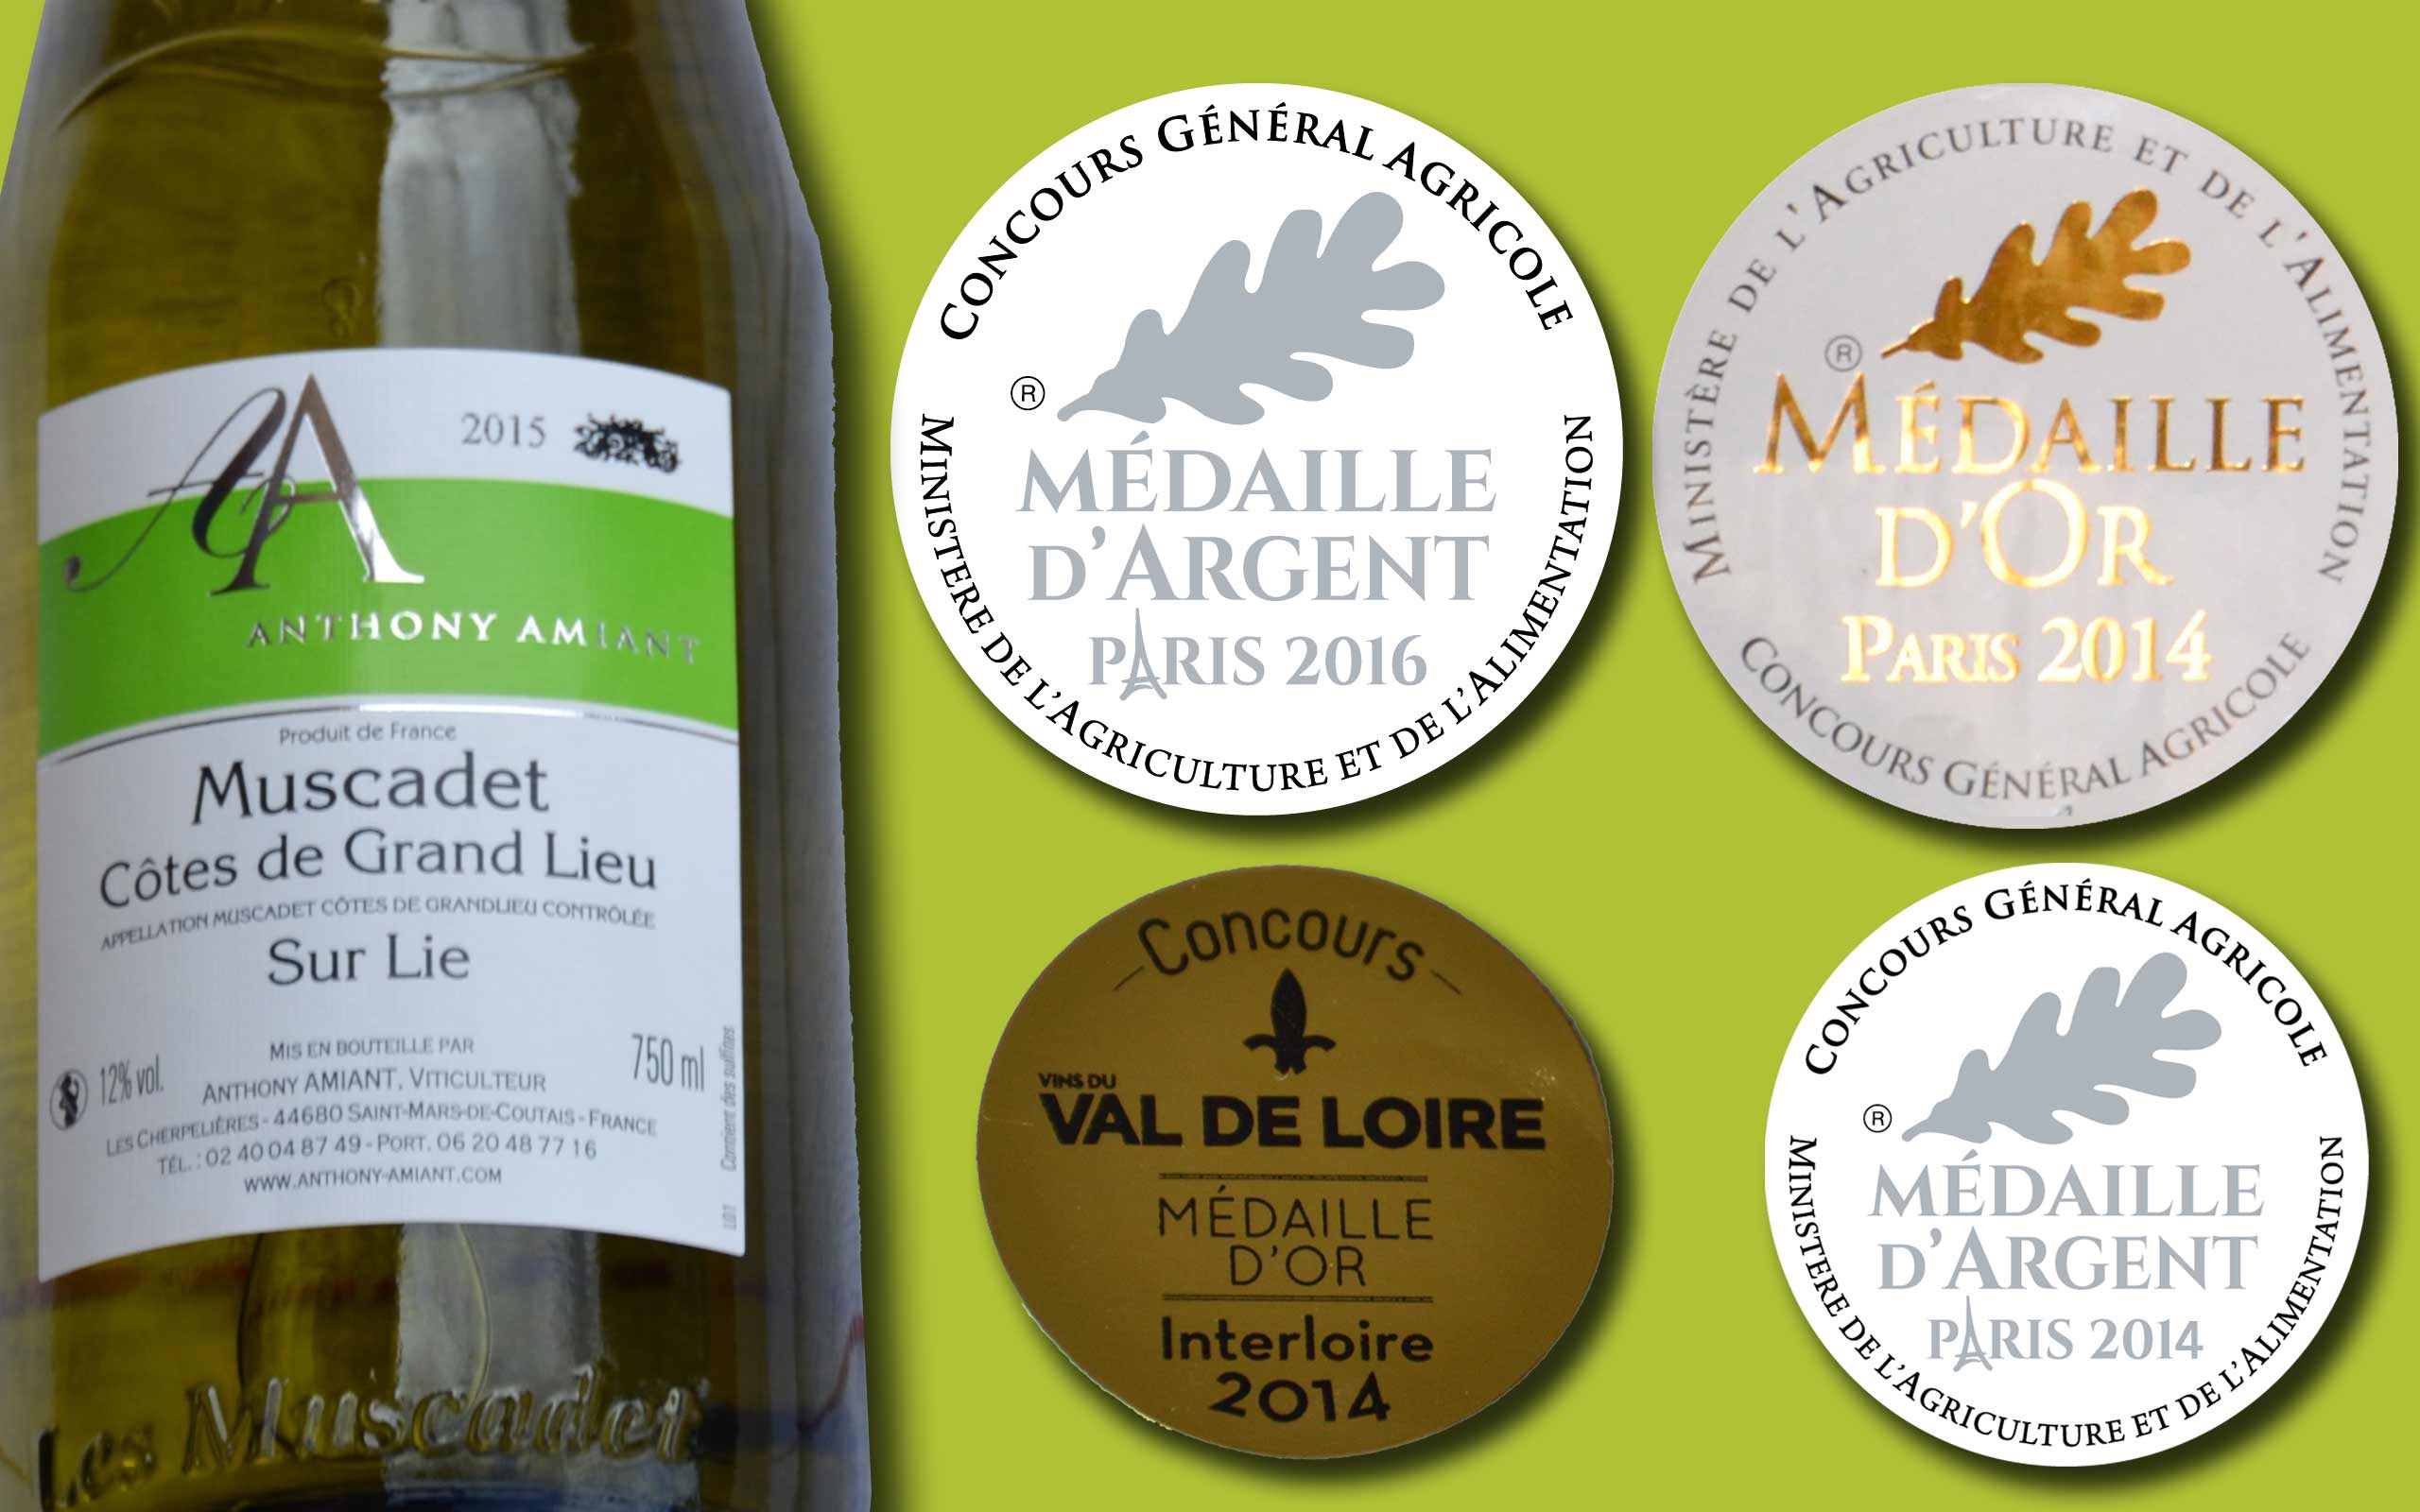 Muscadet Côtes de Grand Lieu sur lie primé en 2016 et 2014